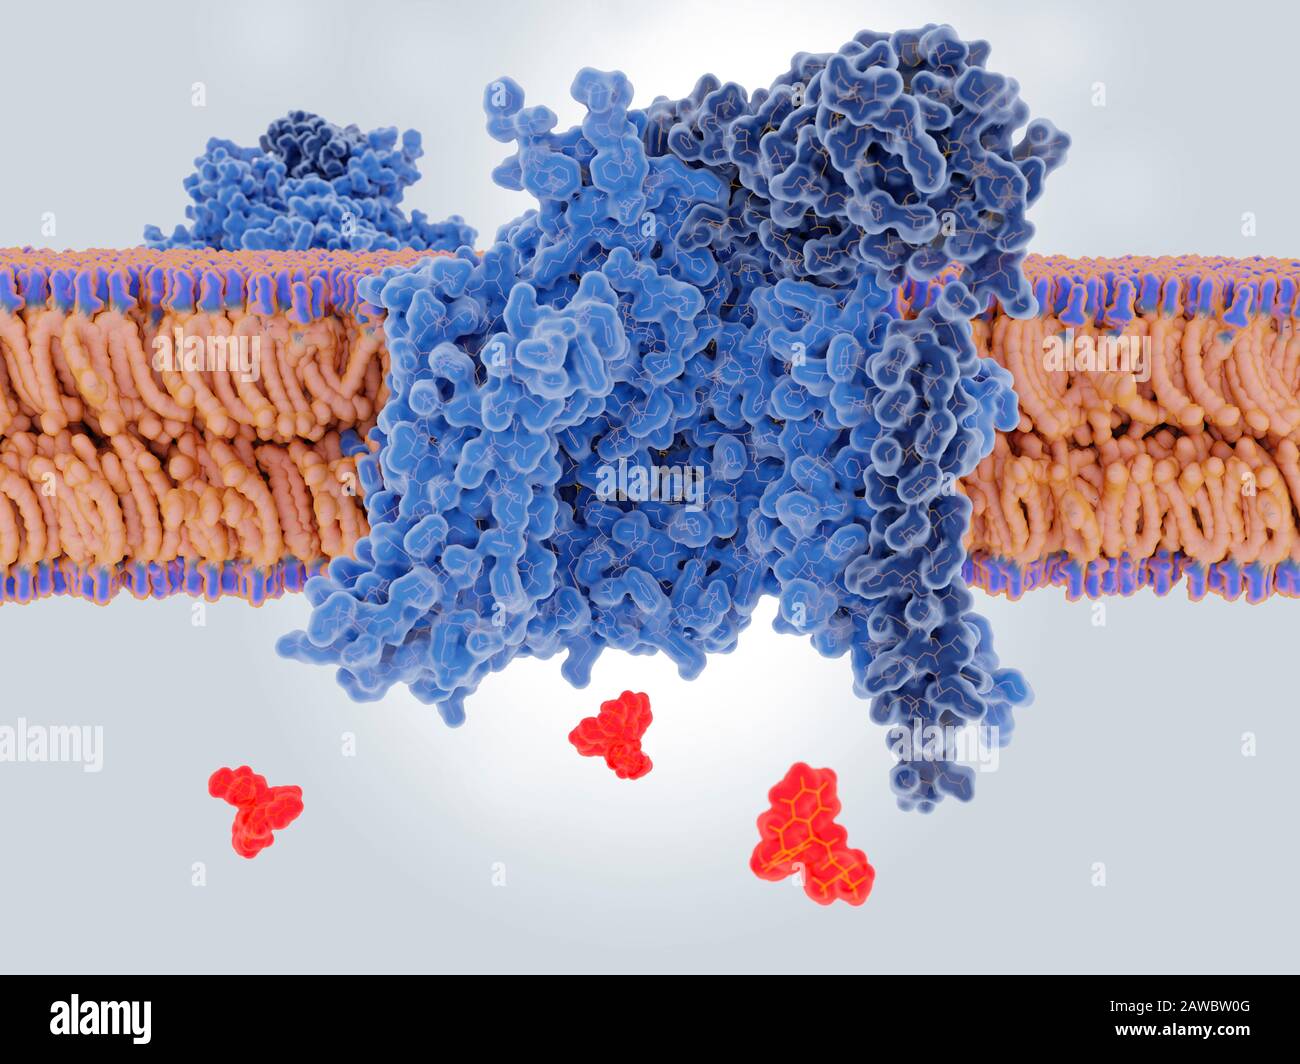 Amitriptylin-Medikament blockiert einen Natriumkanal, Abbildung Stockfoto